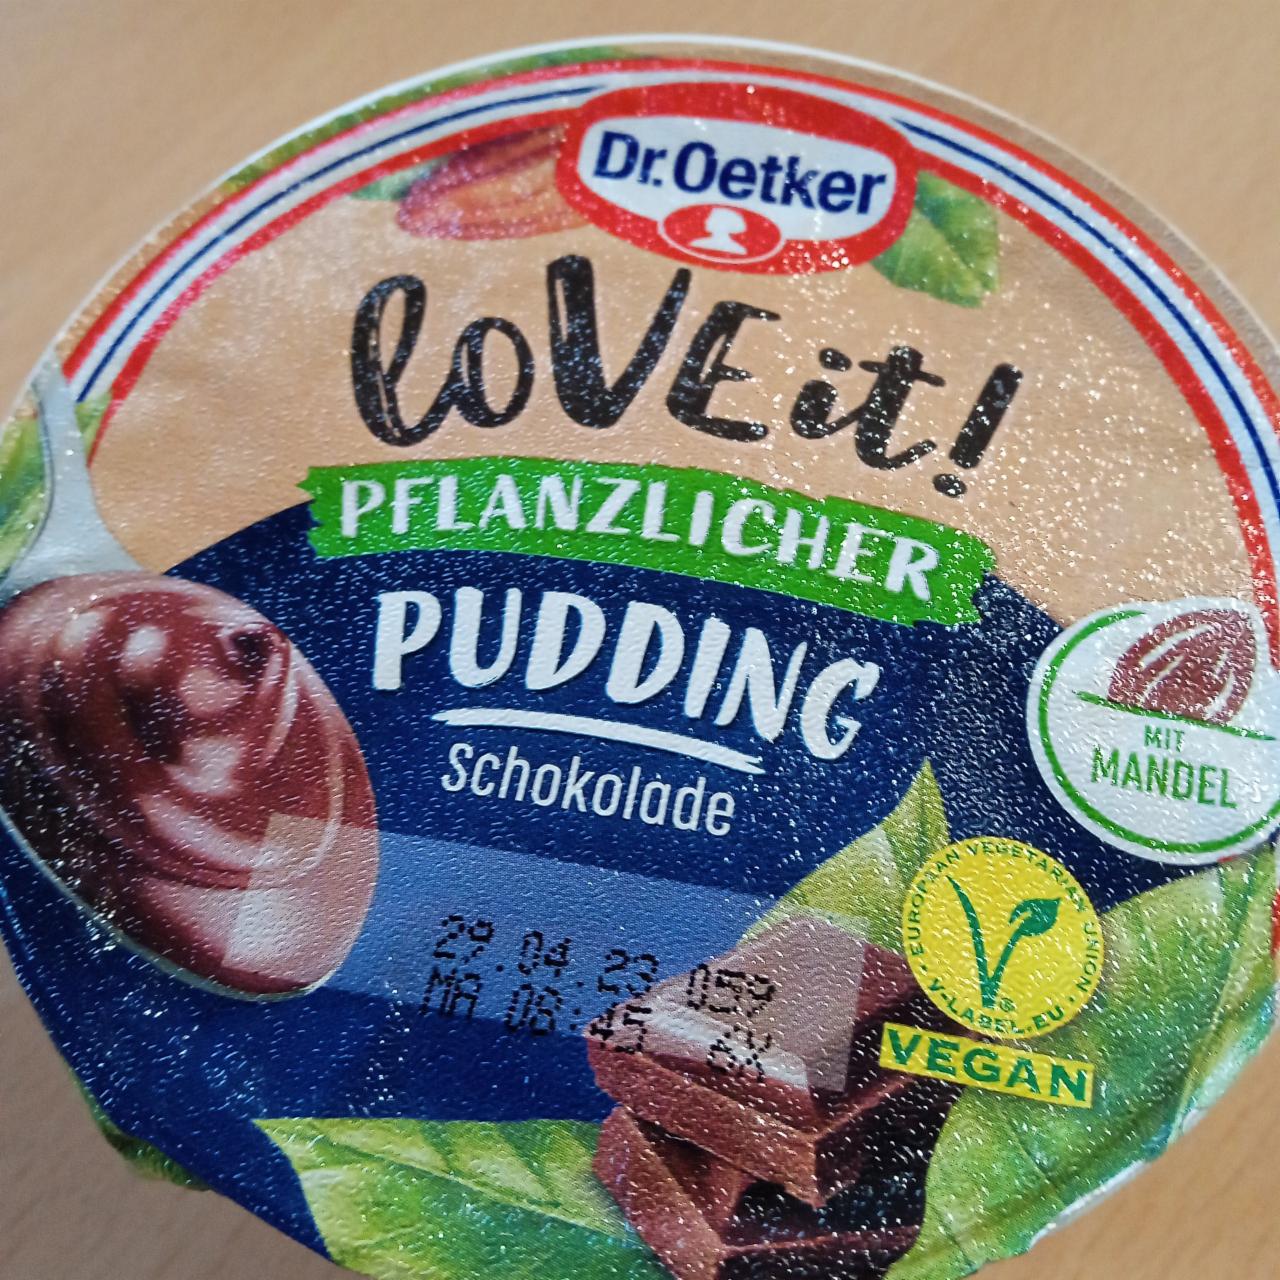 Fotografie - Love it pudding Schokolade mit Mandel pflanzlicher Dr.Oetker